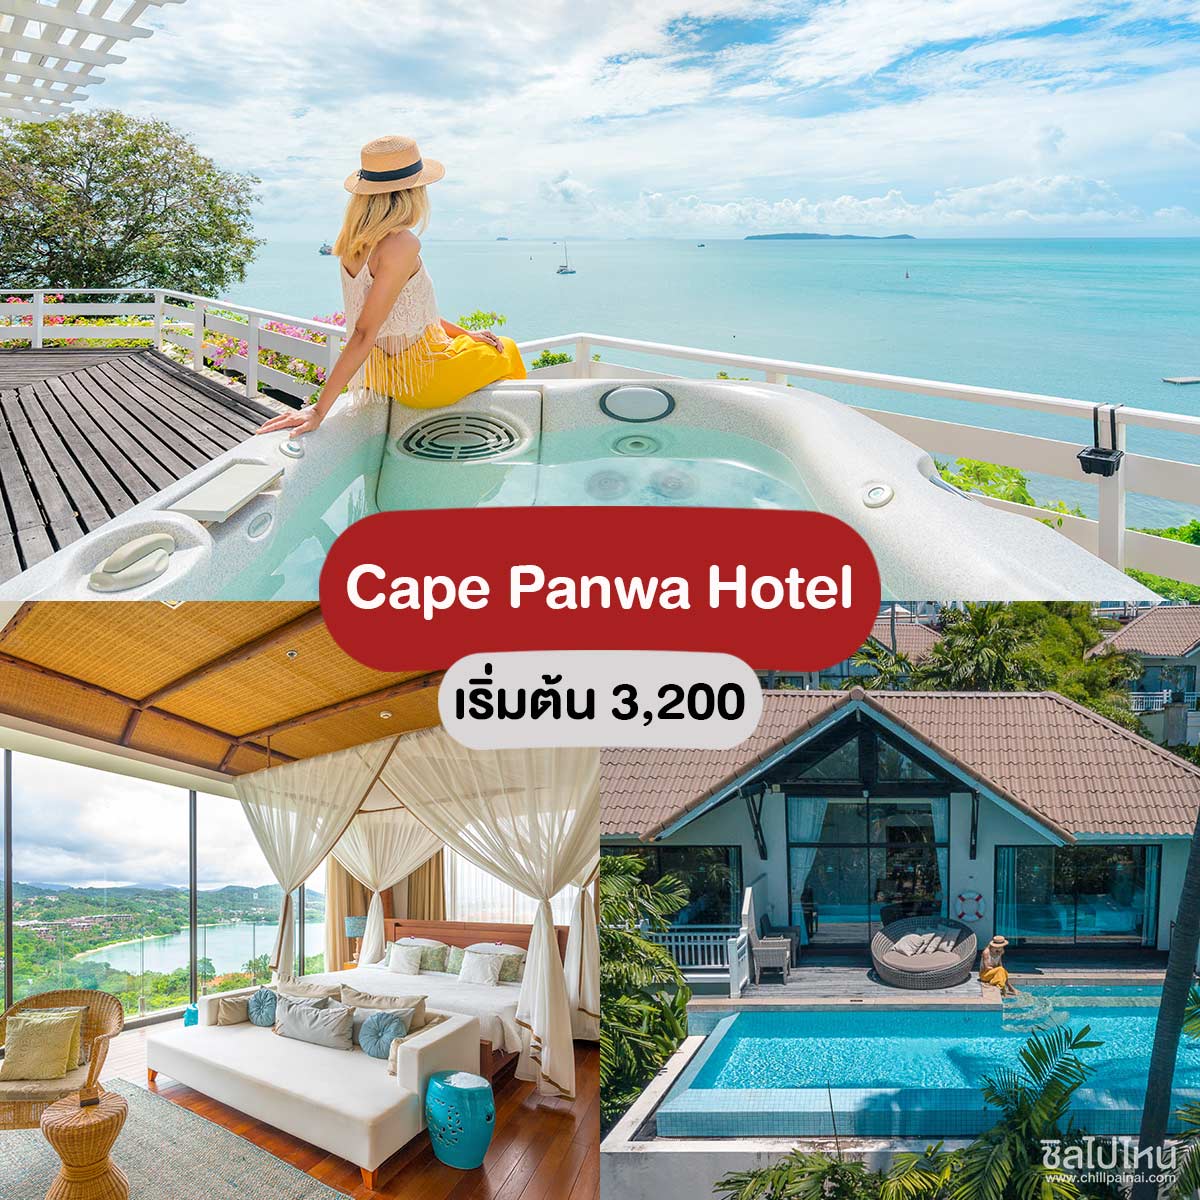 Cape Panwa Hotel - ที่พักภูเก็ตวิวทะเล